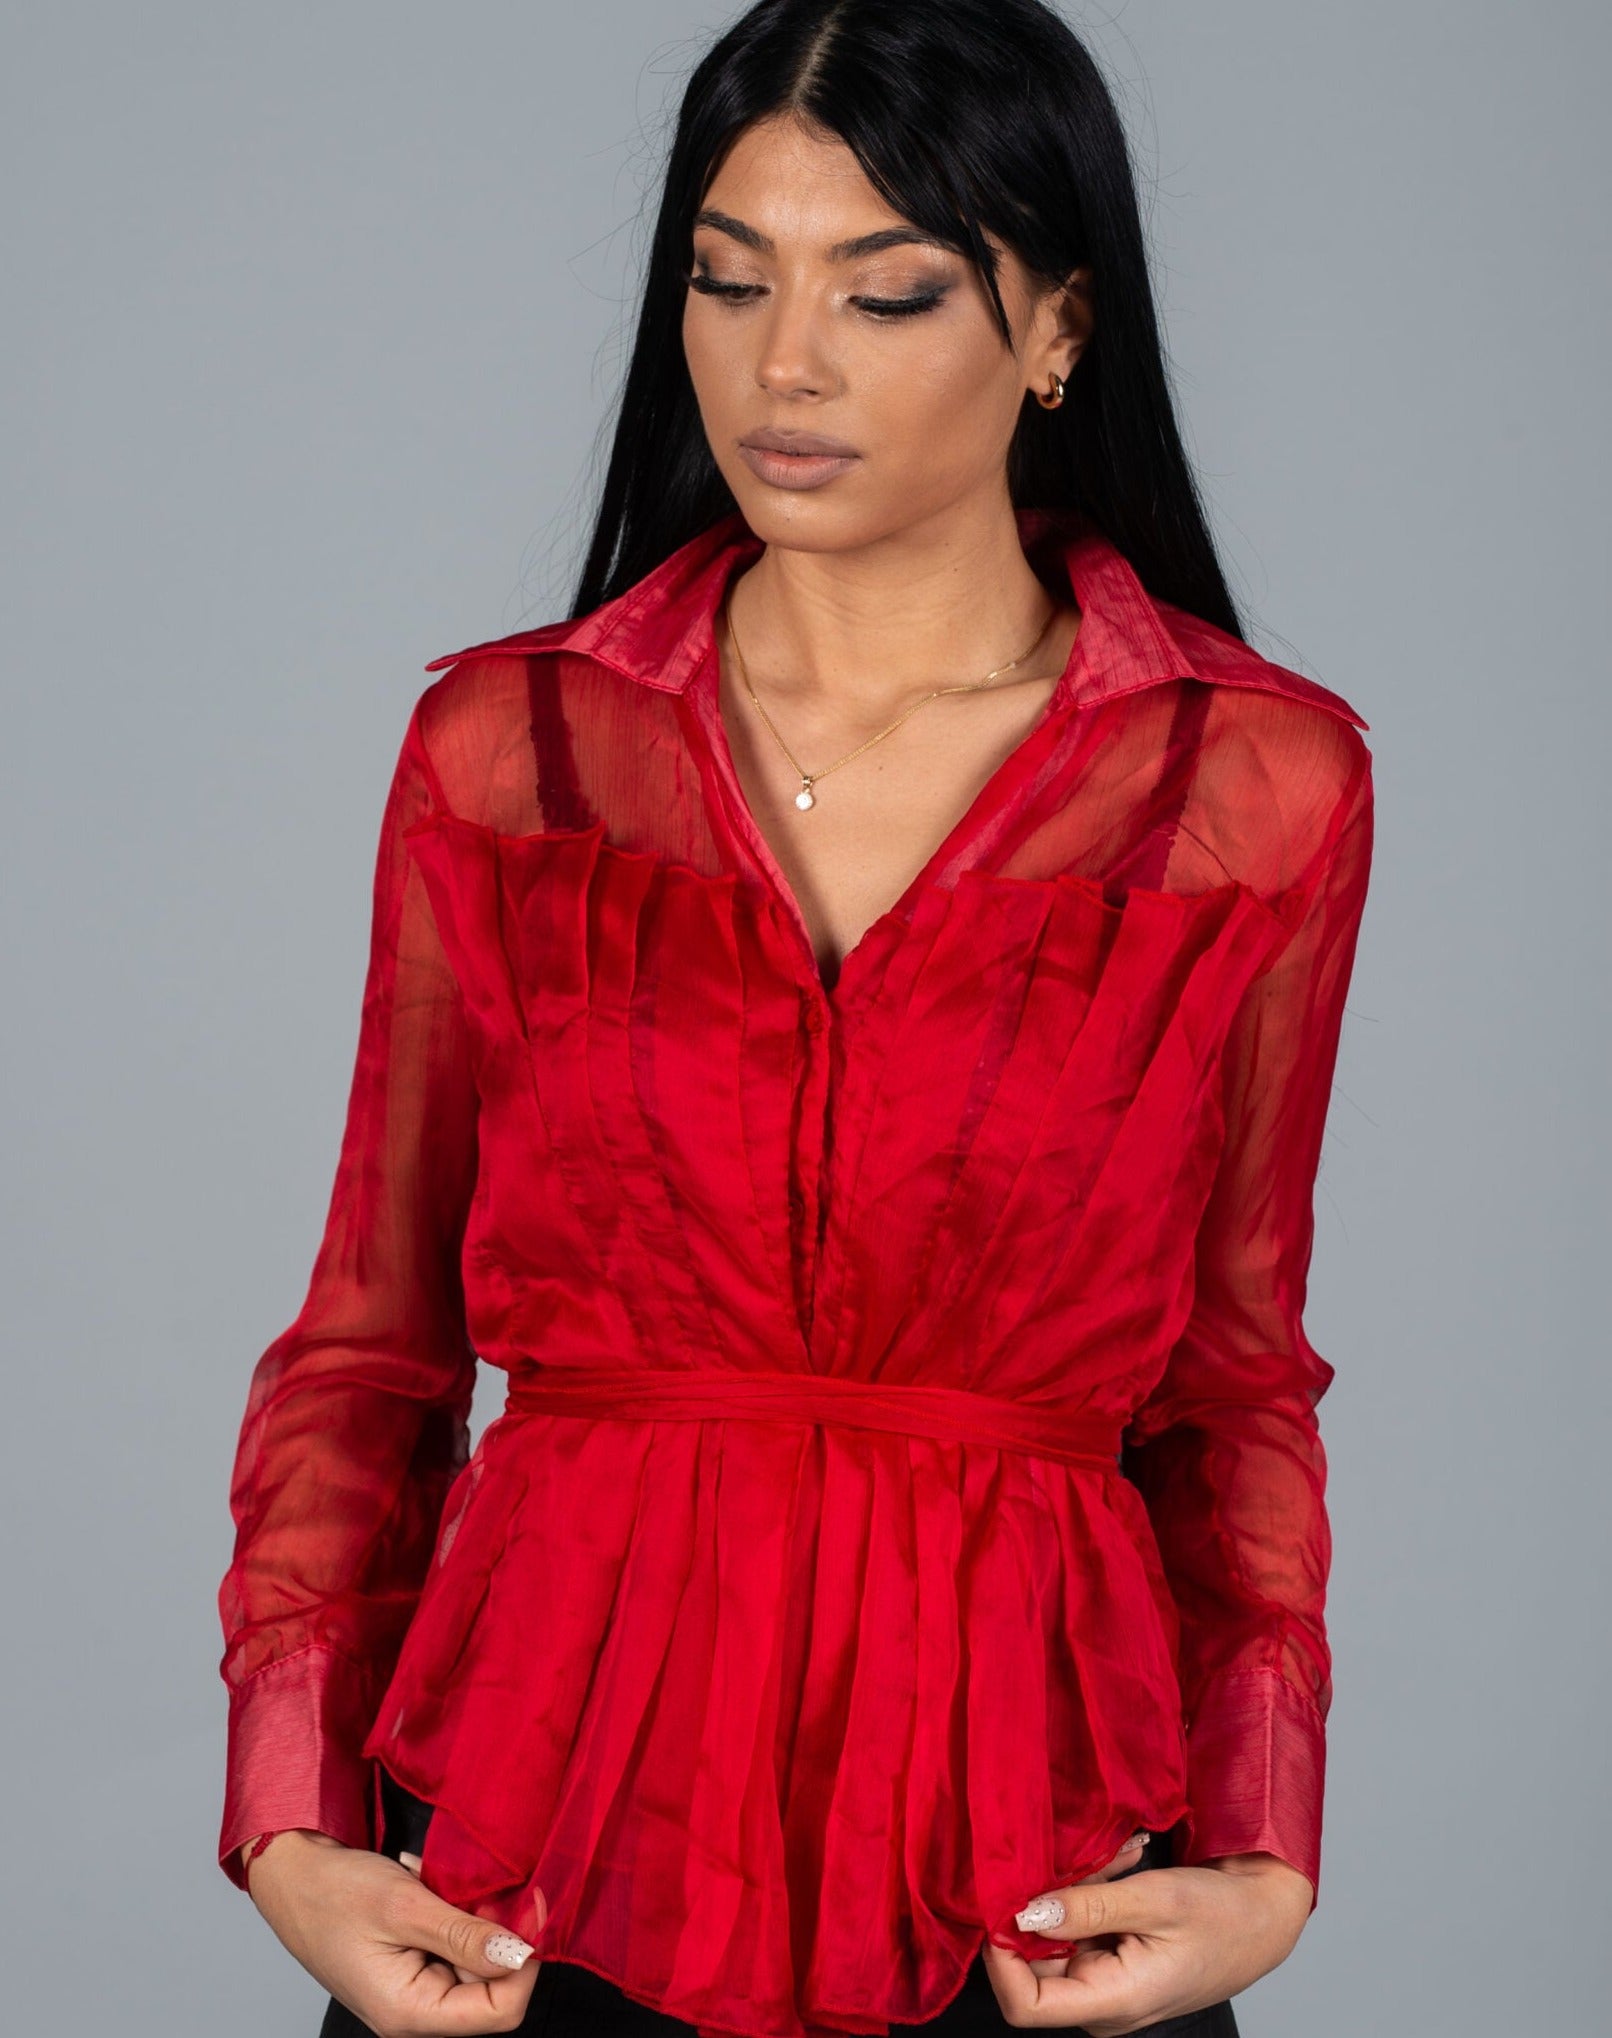 Дамска риза REONNA  https://bvseductive.com/products/дамска-риза-reonna-1  100% полиестер стилна дамска риза с атрактивен дизайн в червен цвят моделът е с набор на деколтето и коланче позволява да се комбинира разнообразно актуално предложение за сезон есен/зима чудесен избор за красива, женствена визия